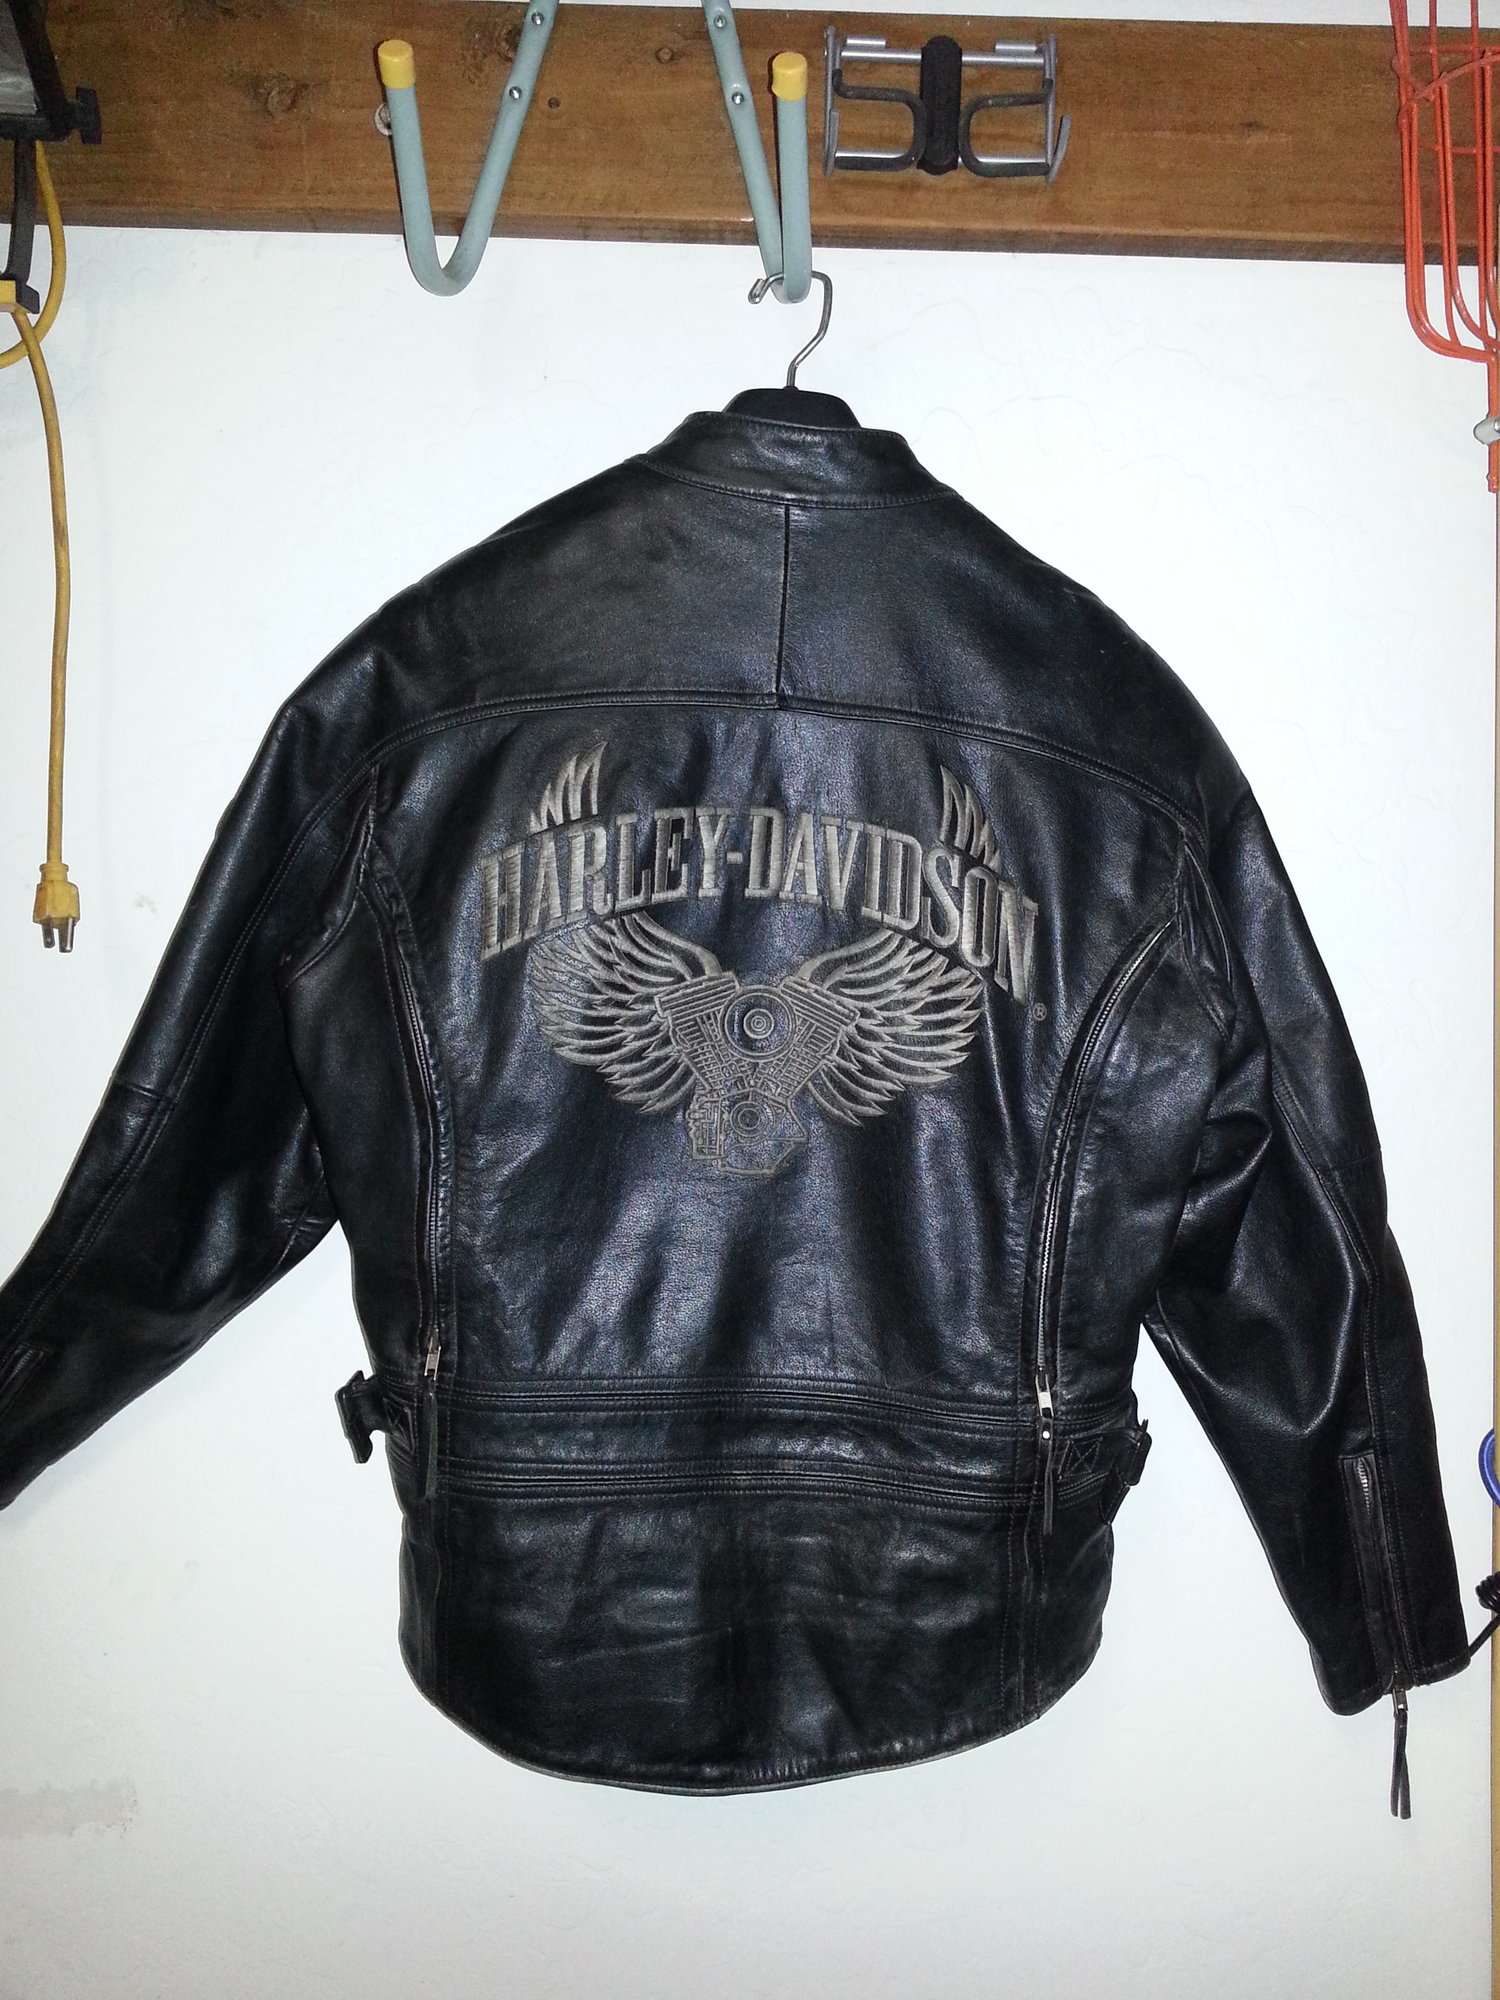 Rare Vintage Harley Davidson Leather Jacket - Harley Davidson Forums